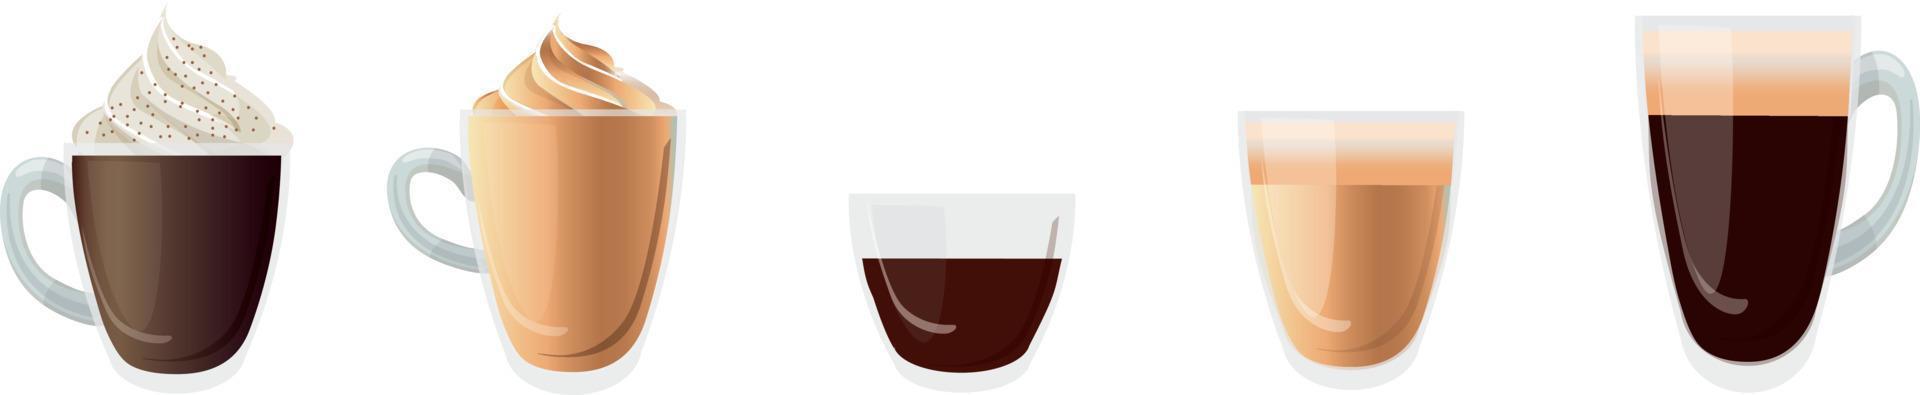 café tazas. caliente delicioso bebidas en transparente lentes bebida espuma en jarra Café exprés moca americano café bueno vector realista modelo